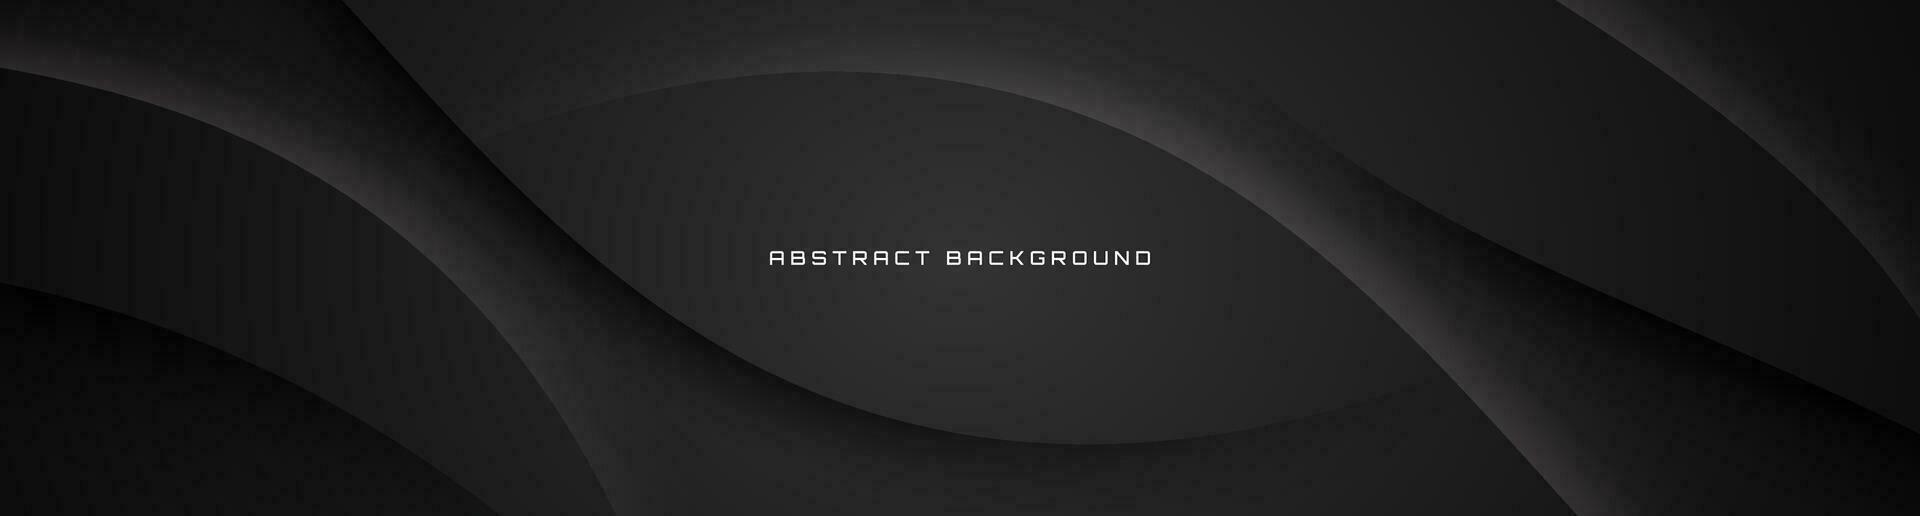 3d svart geometrisk abstrakt bakgrund överlappning lager på mörk Plats med vågor dekoration. minimalistisk modern grafisk design element Skära ut stil begrepp för baner, flygblad, kort, eller broschyr omslag vektor